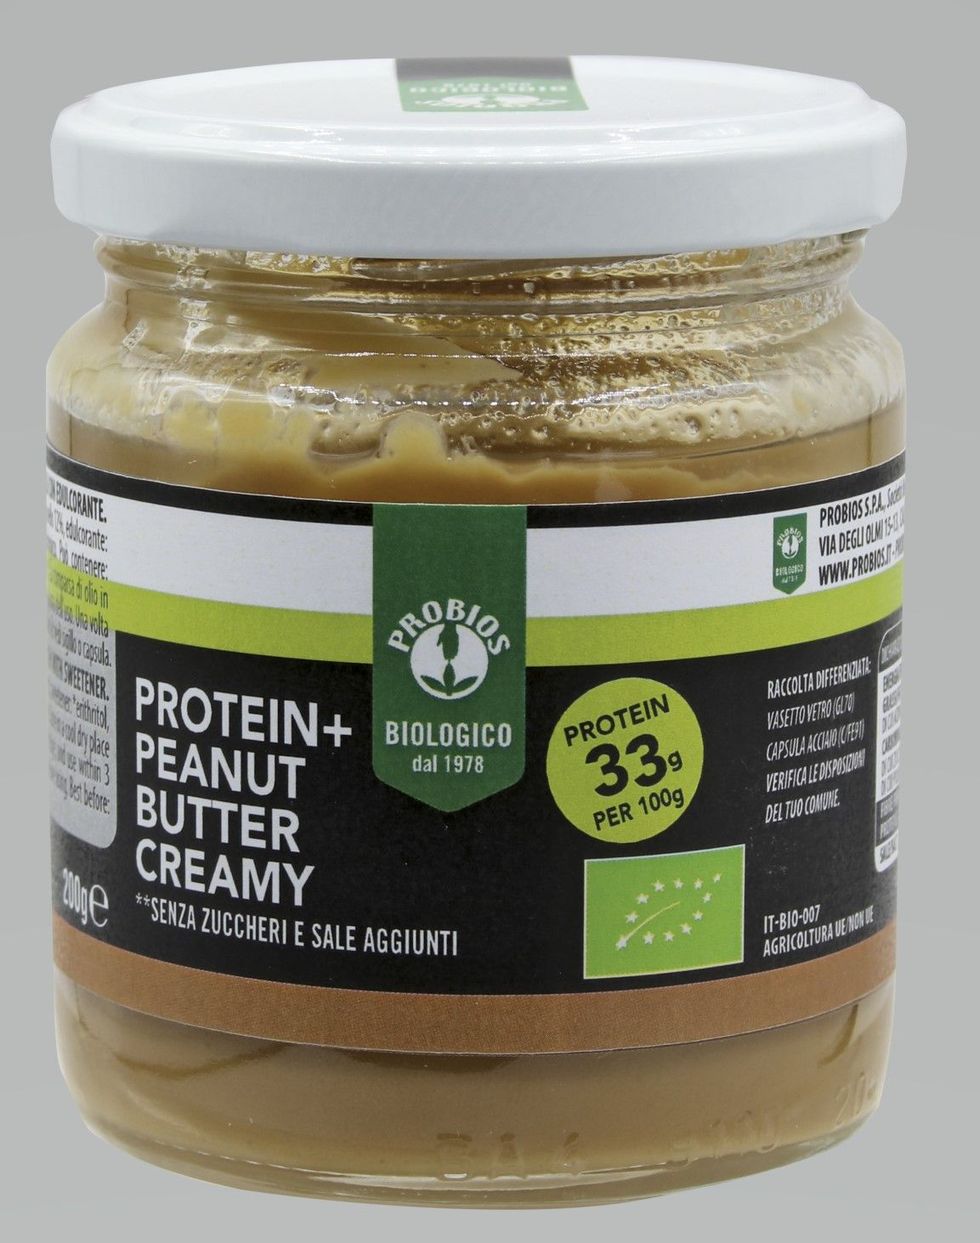 Protein+ Peanut Butter Creamy BioChampion è una crema liscia spalmabile a base di arachidi e proteine di piselli. Dolcificata solo con eritritolo biologico estratto dal mais, senza zuccheri e sale aggiunti.